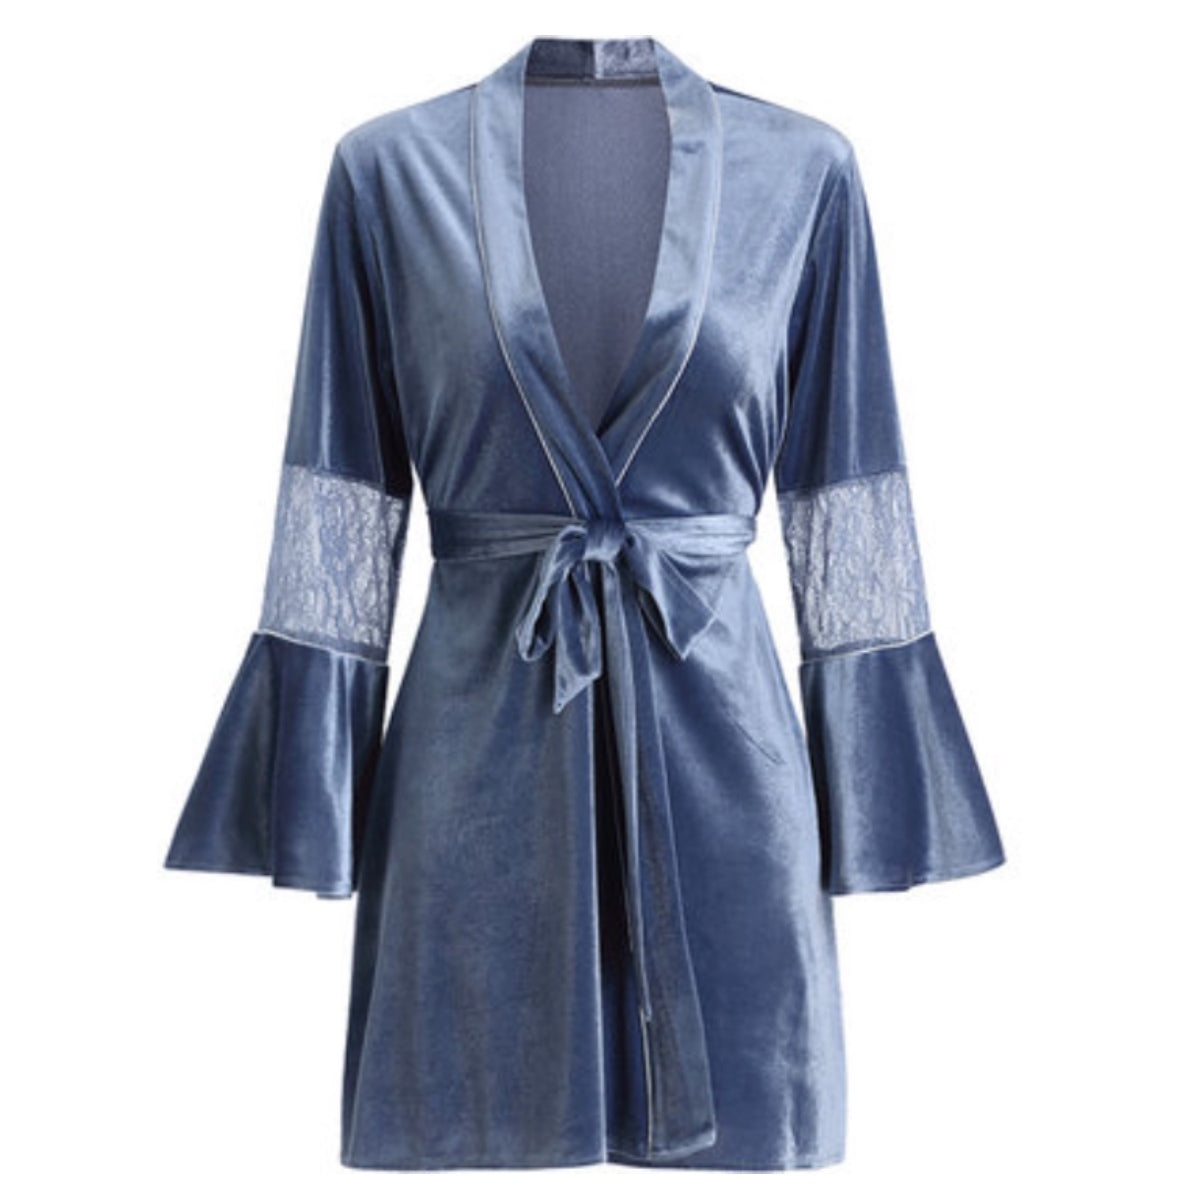 Pernilla velvet robe Intimates LOVEFREYA Free size Greyish blue 